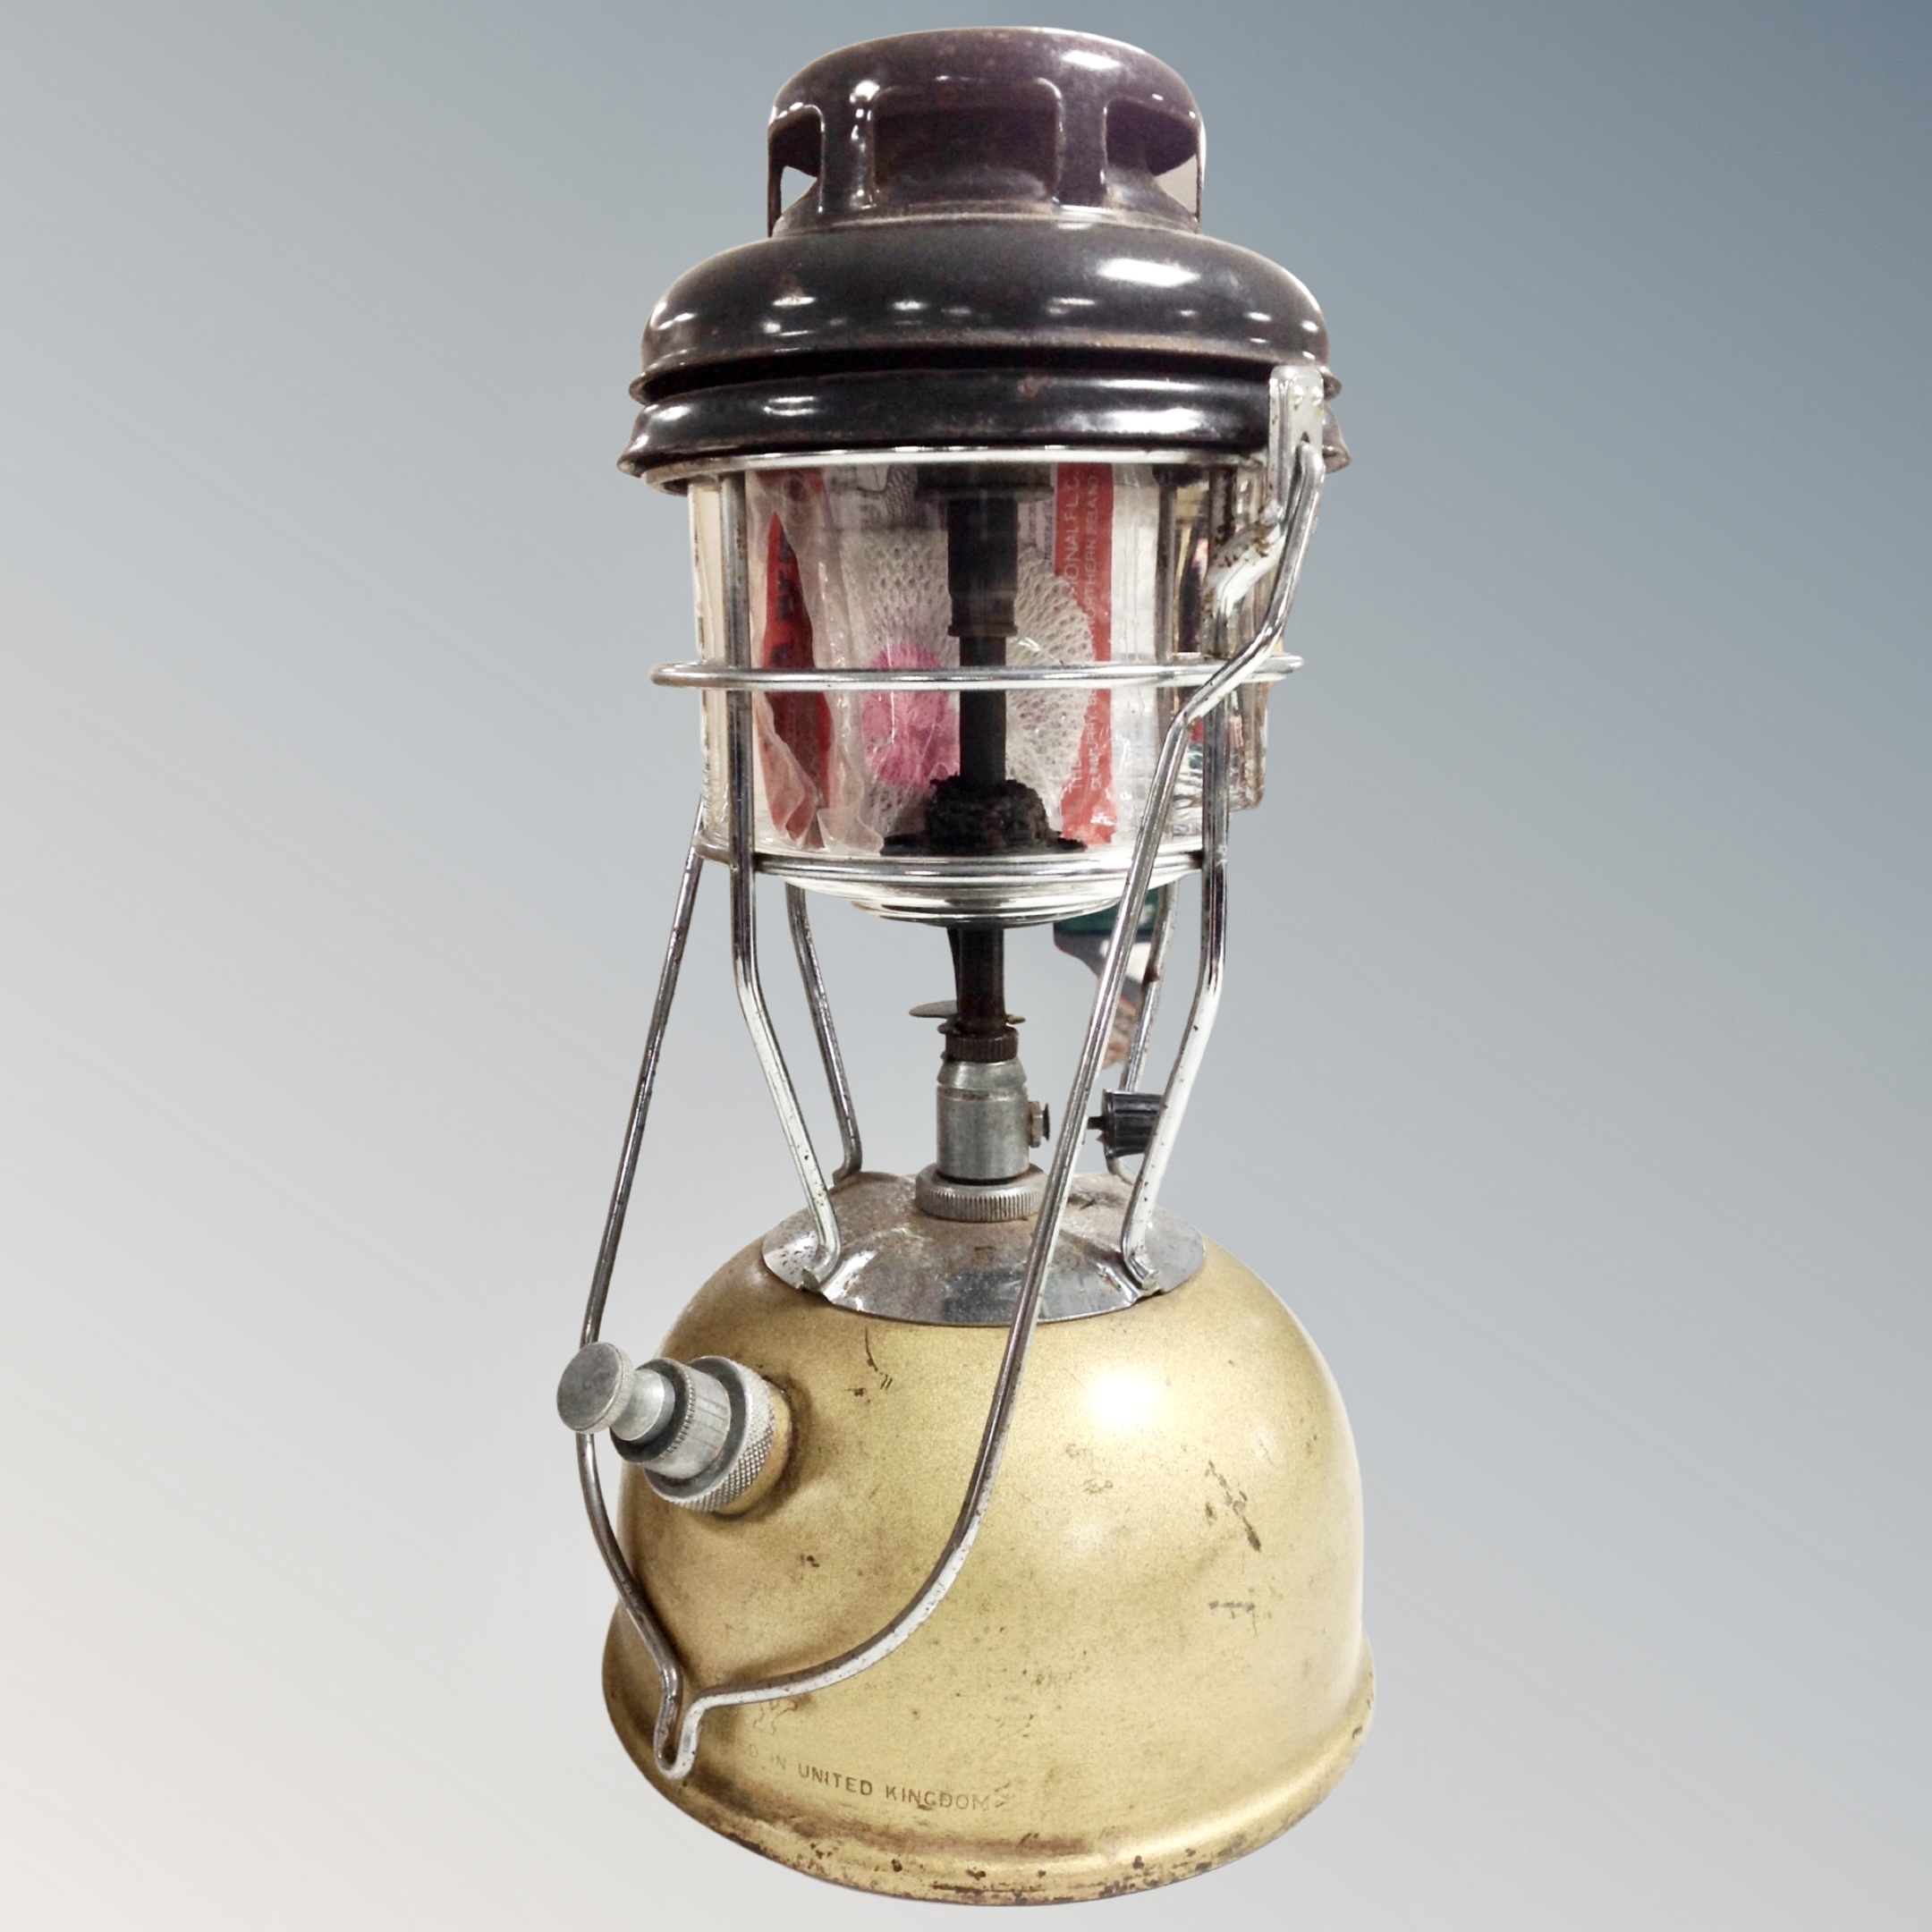 A vintage Tilley lamp.